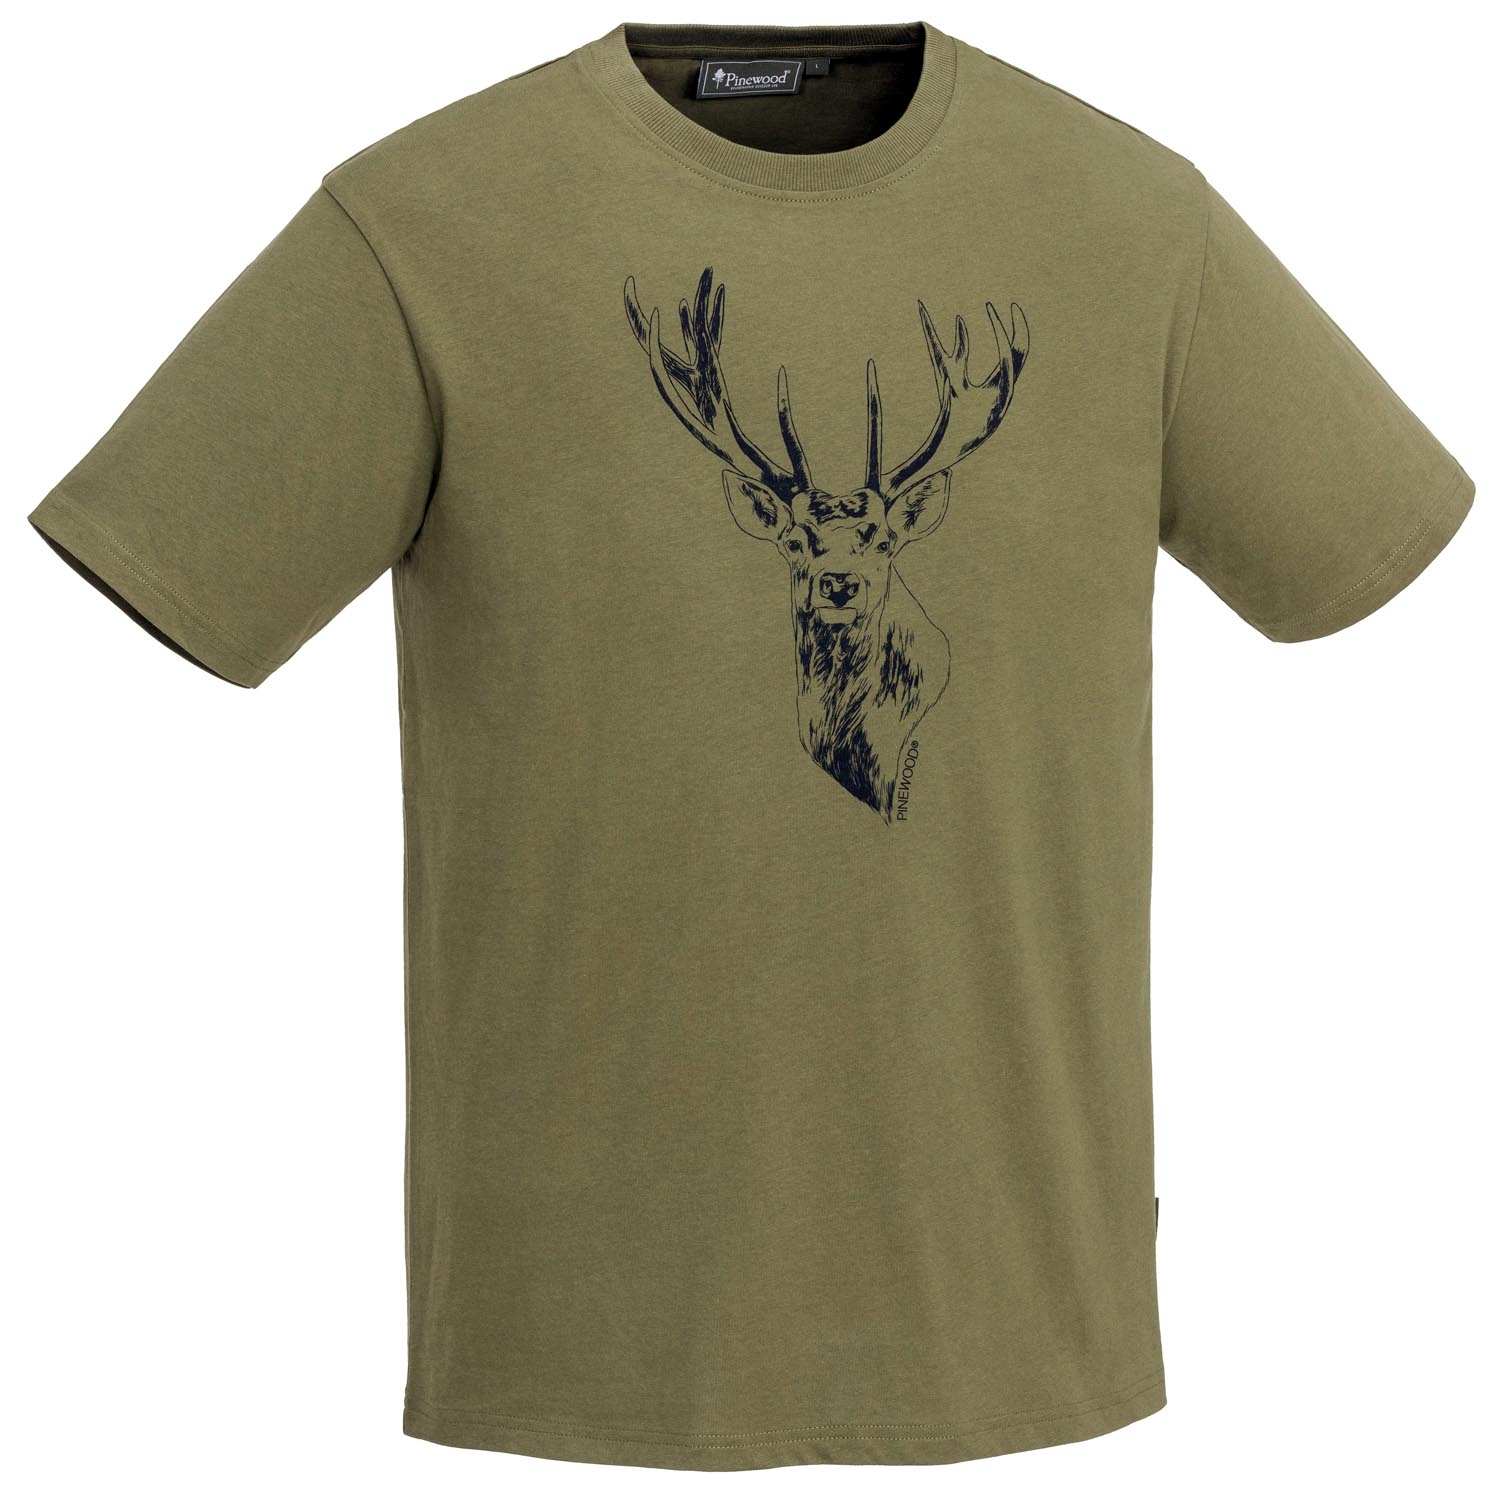 Pinewood T-Shirt Red Deer Grün